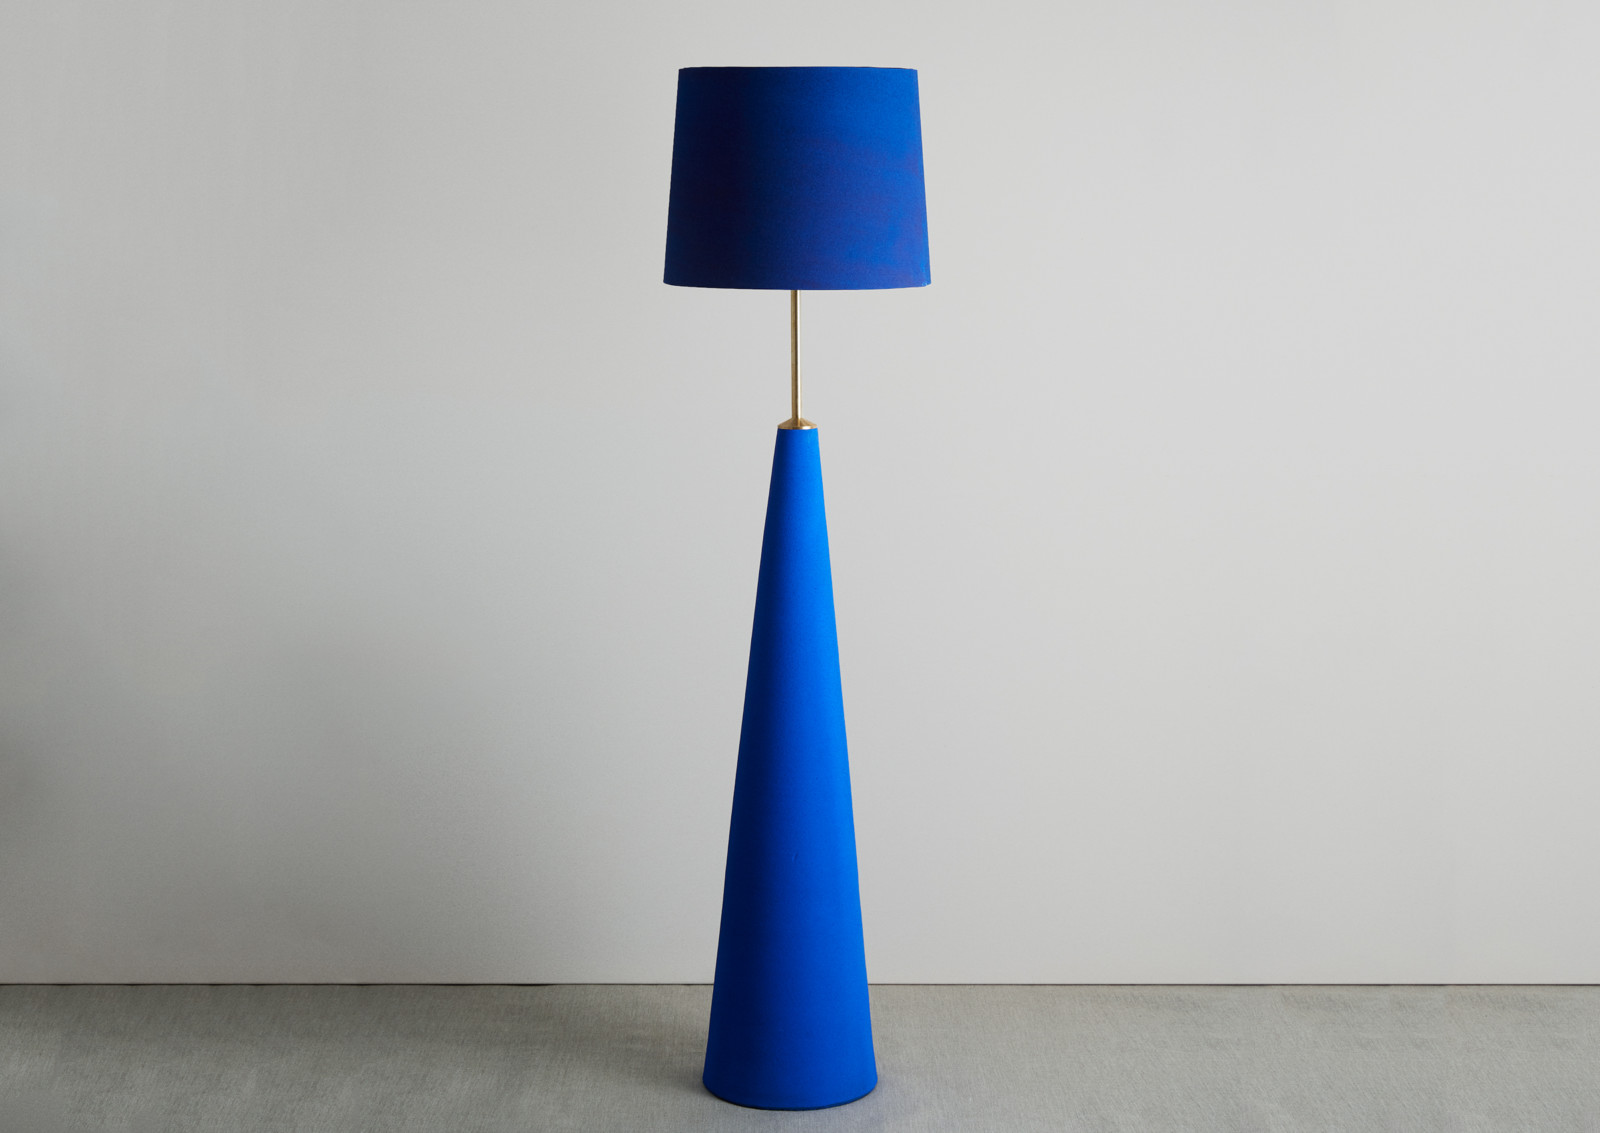 blue lamp shades 7x7x8